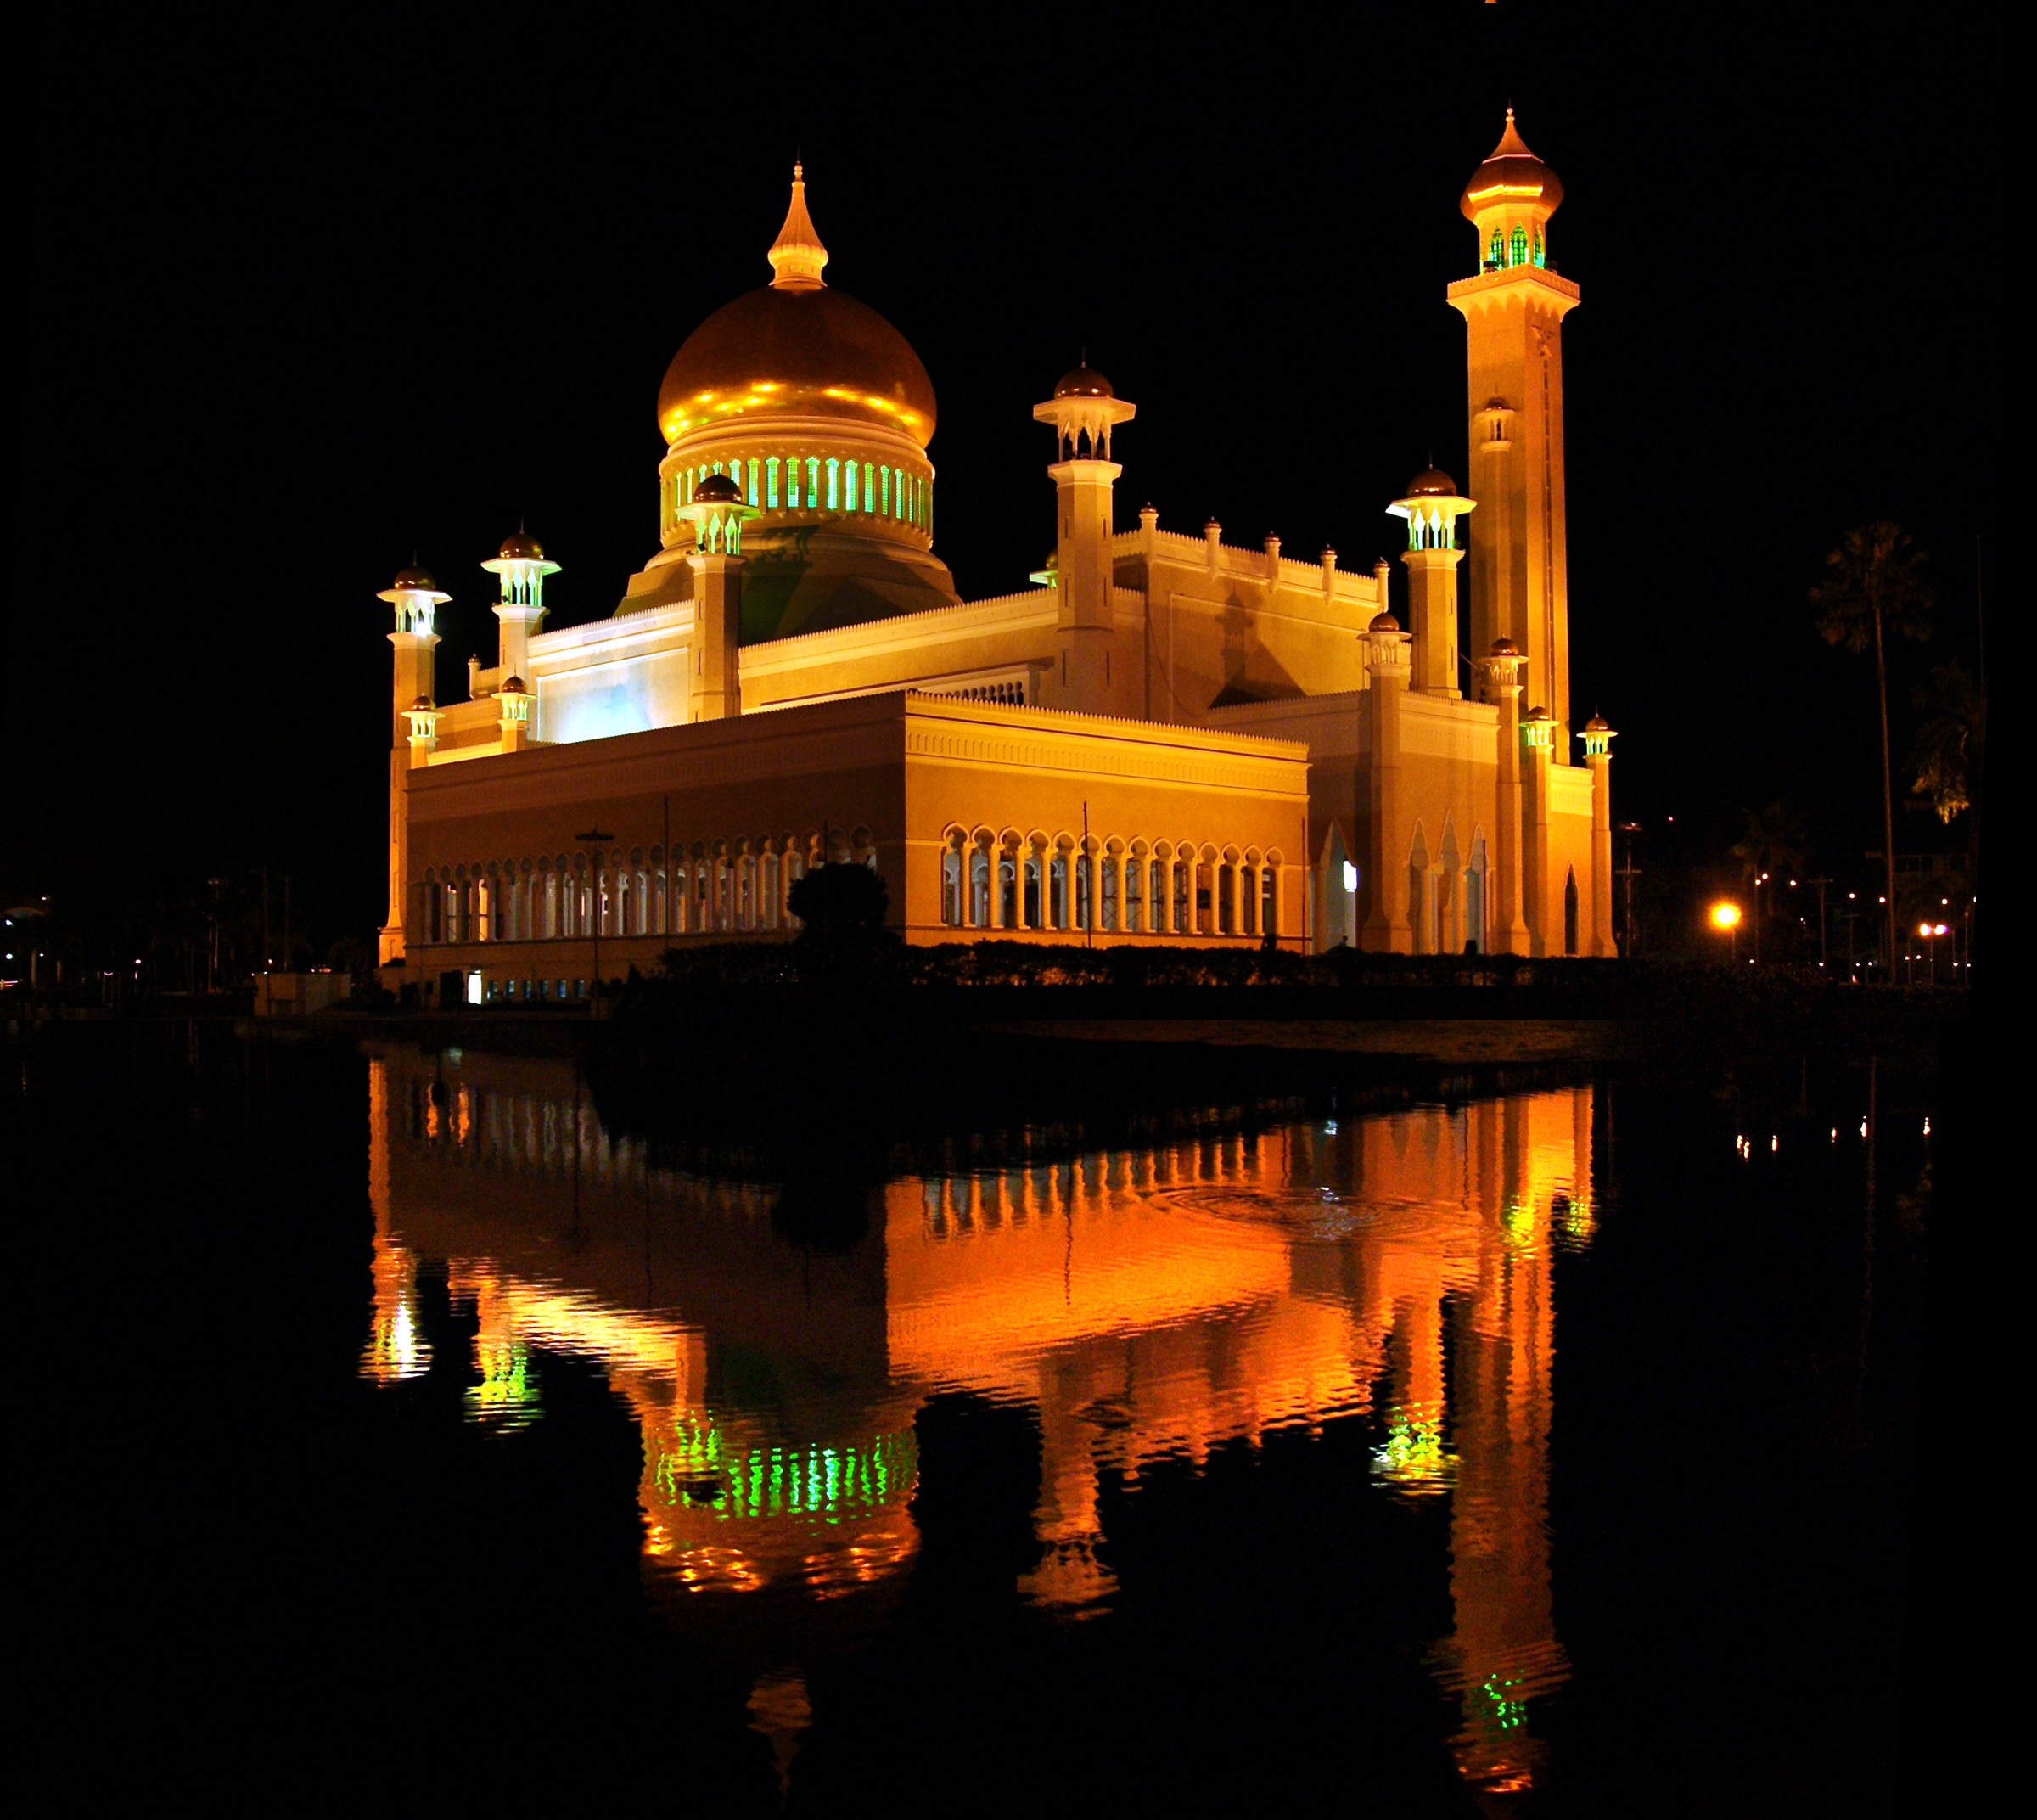 Sultan Omar Ali Saifuddien Mosque at night